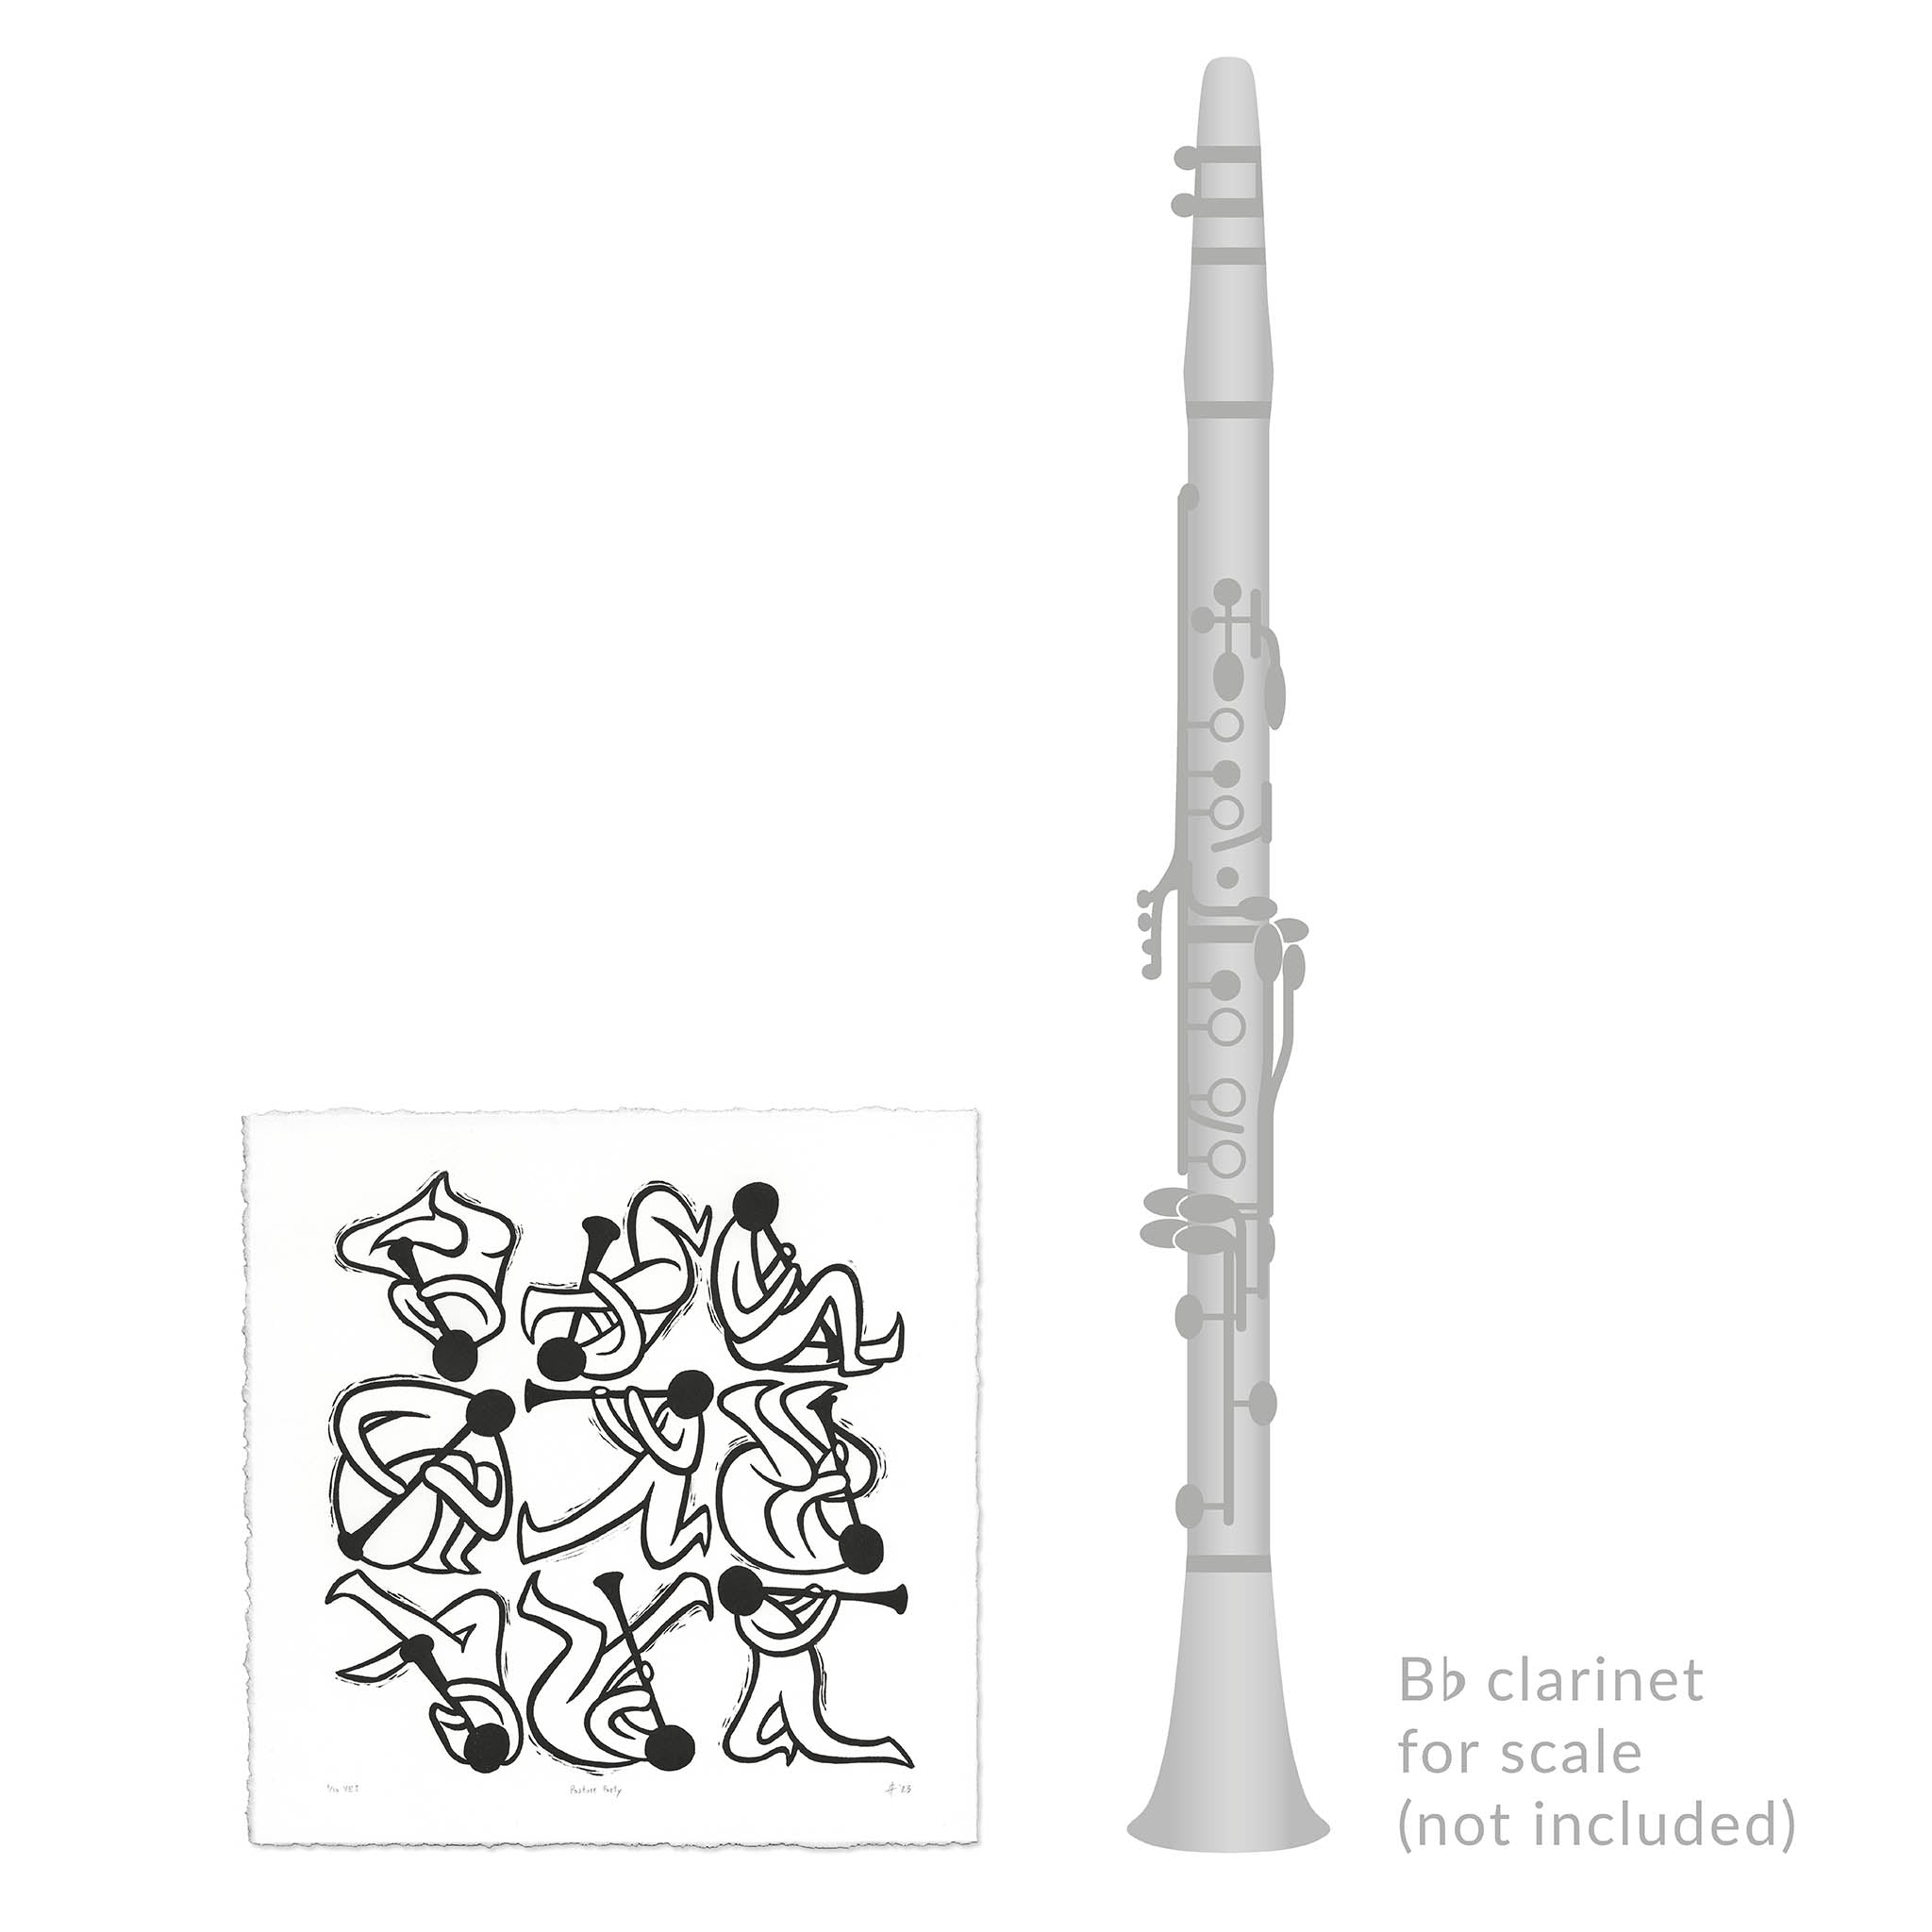 Posture Party Clarinet Linocut Art Print size comparison